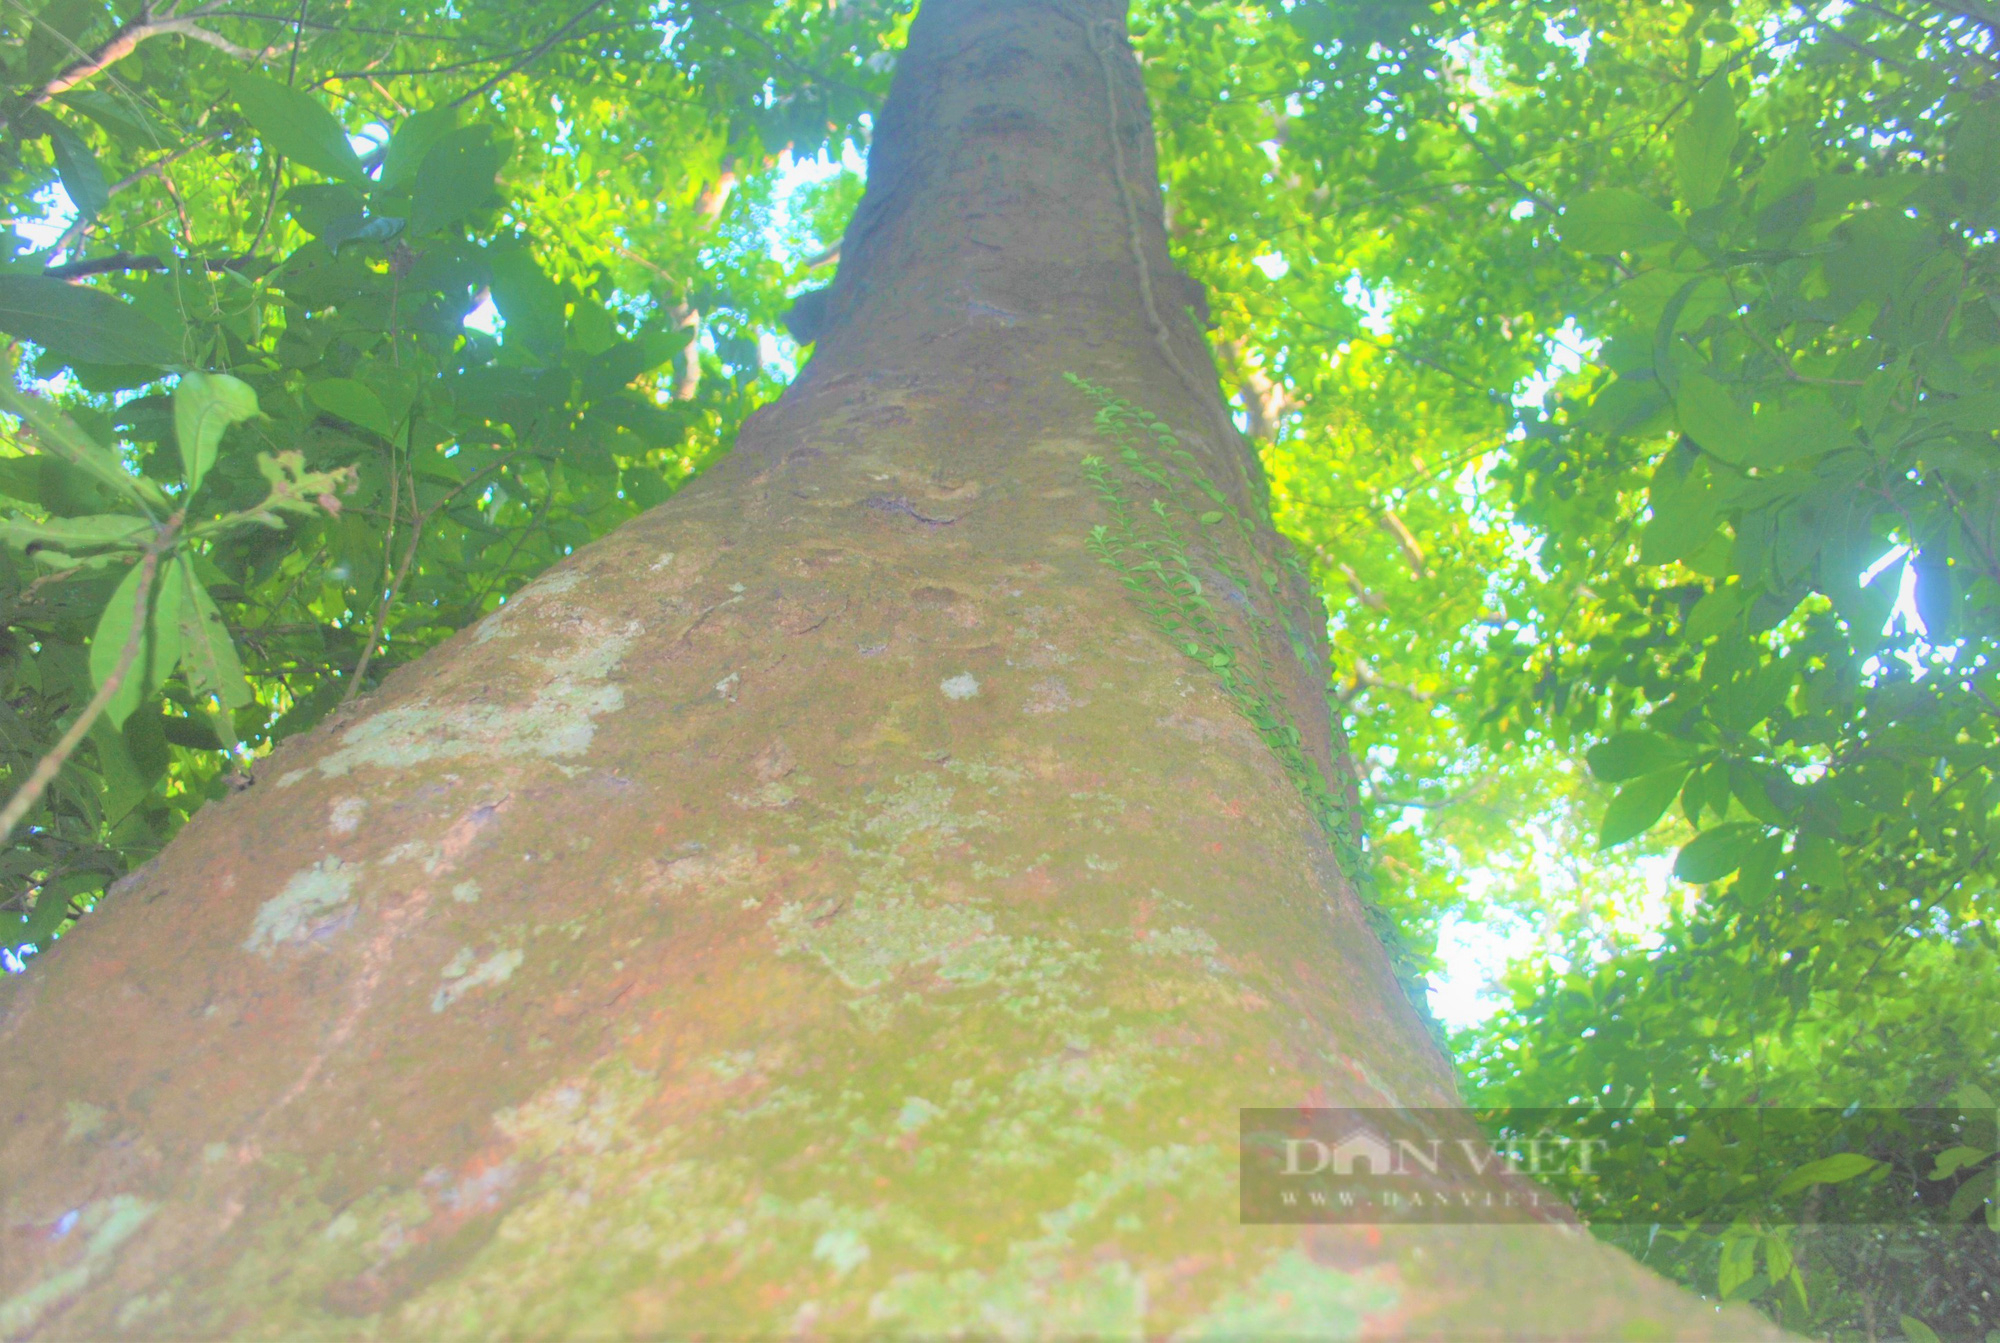 Hương ước kỳ lạ rừng lim xanh hàng trăm tuổi độc nhất ở huyện lúa Nghệ An - Ảnh 5.